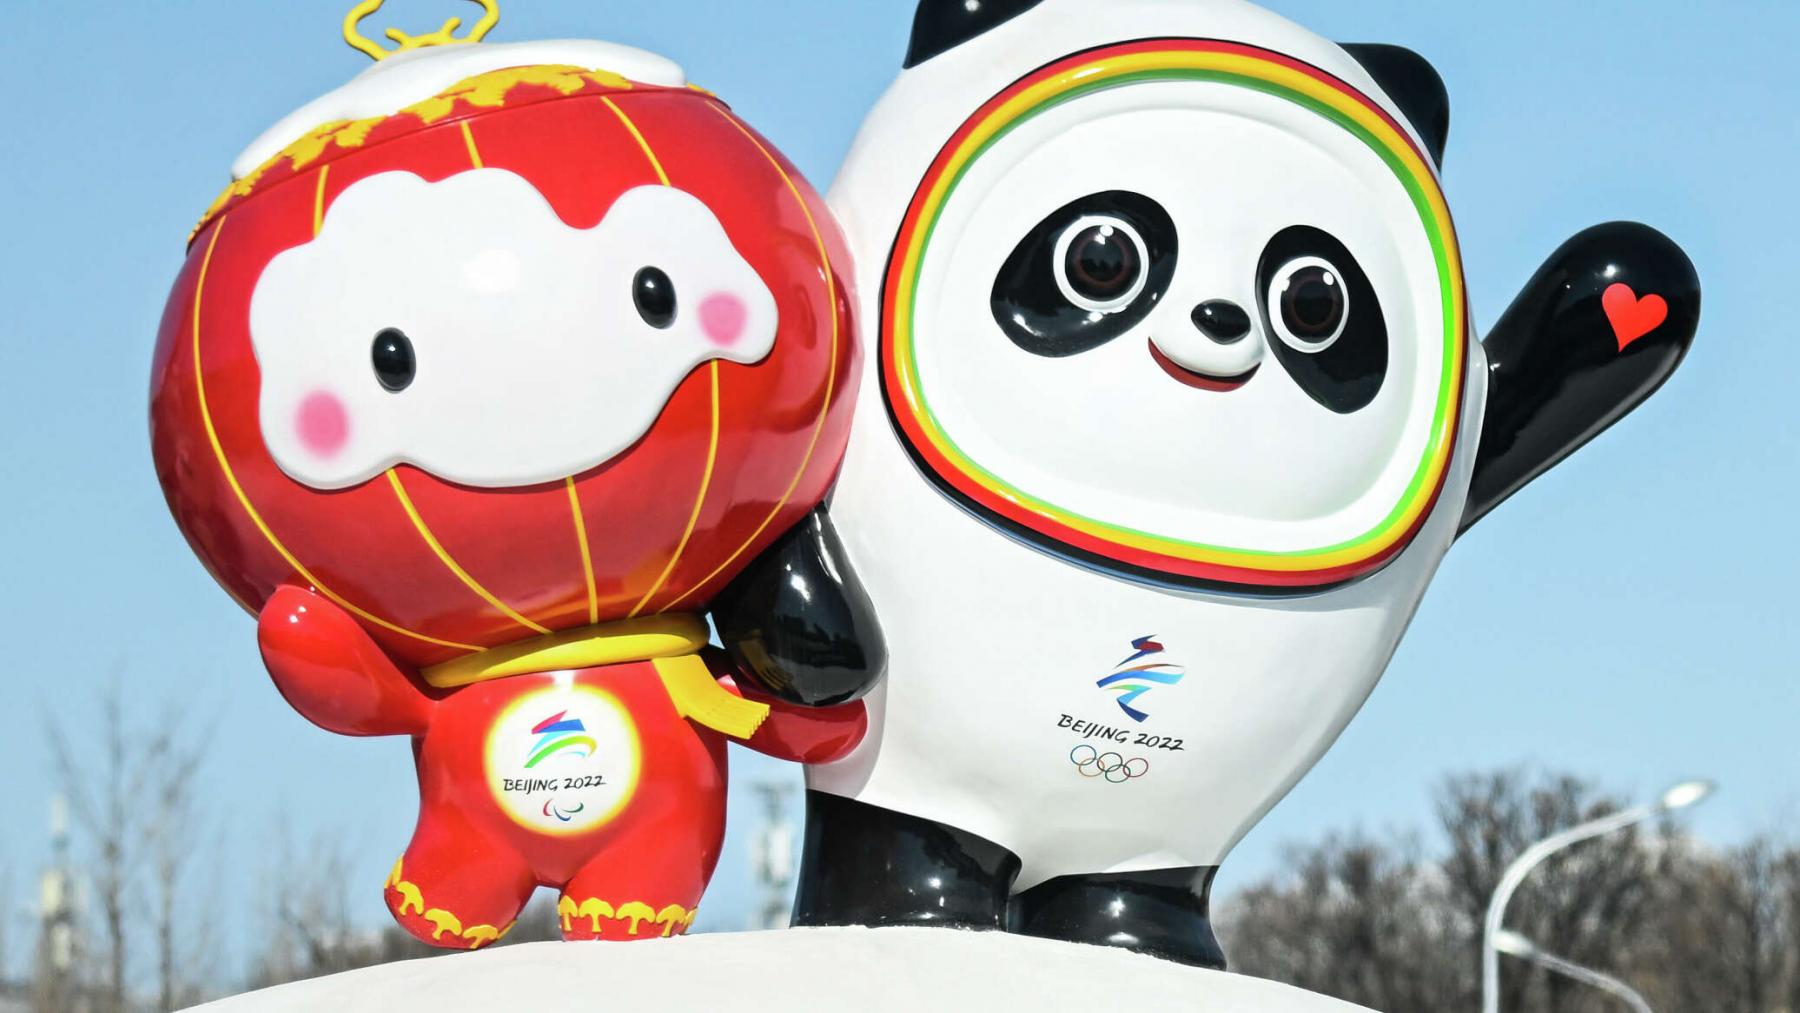 Фото Программа Олимпиады-2022 в Пекине – полное расписание соревнований 6